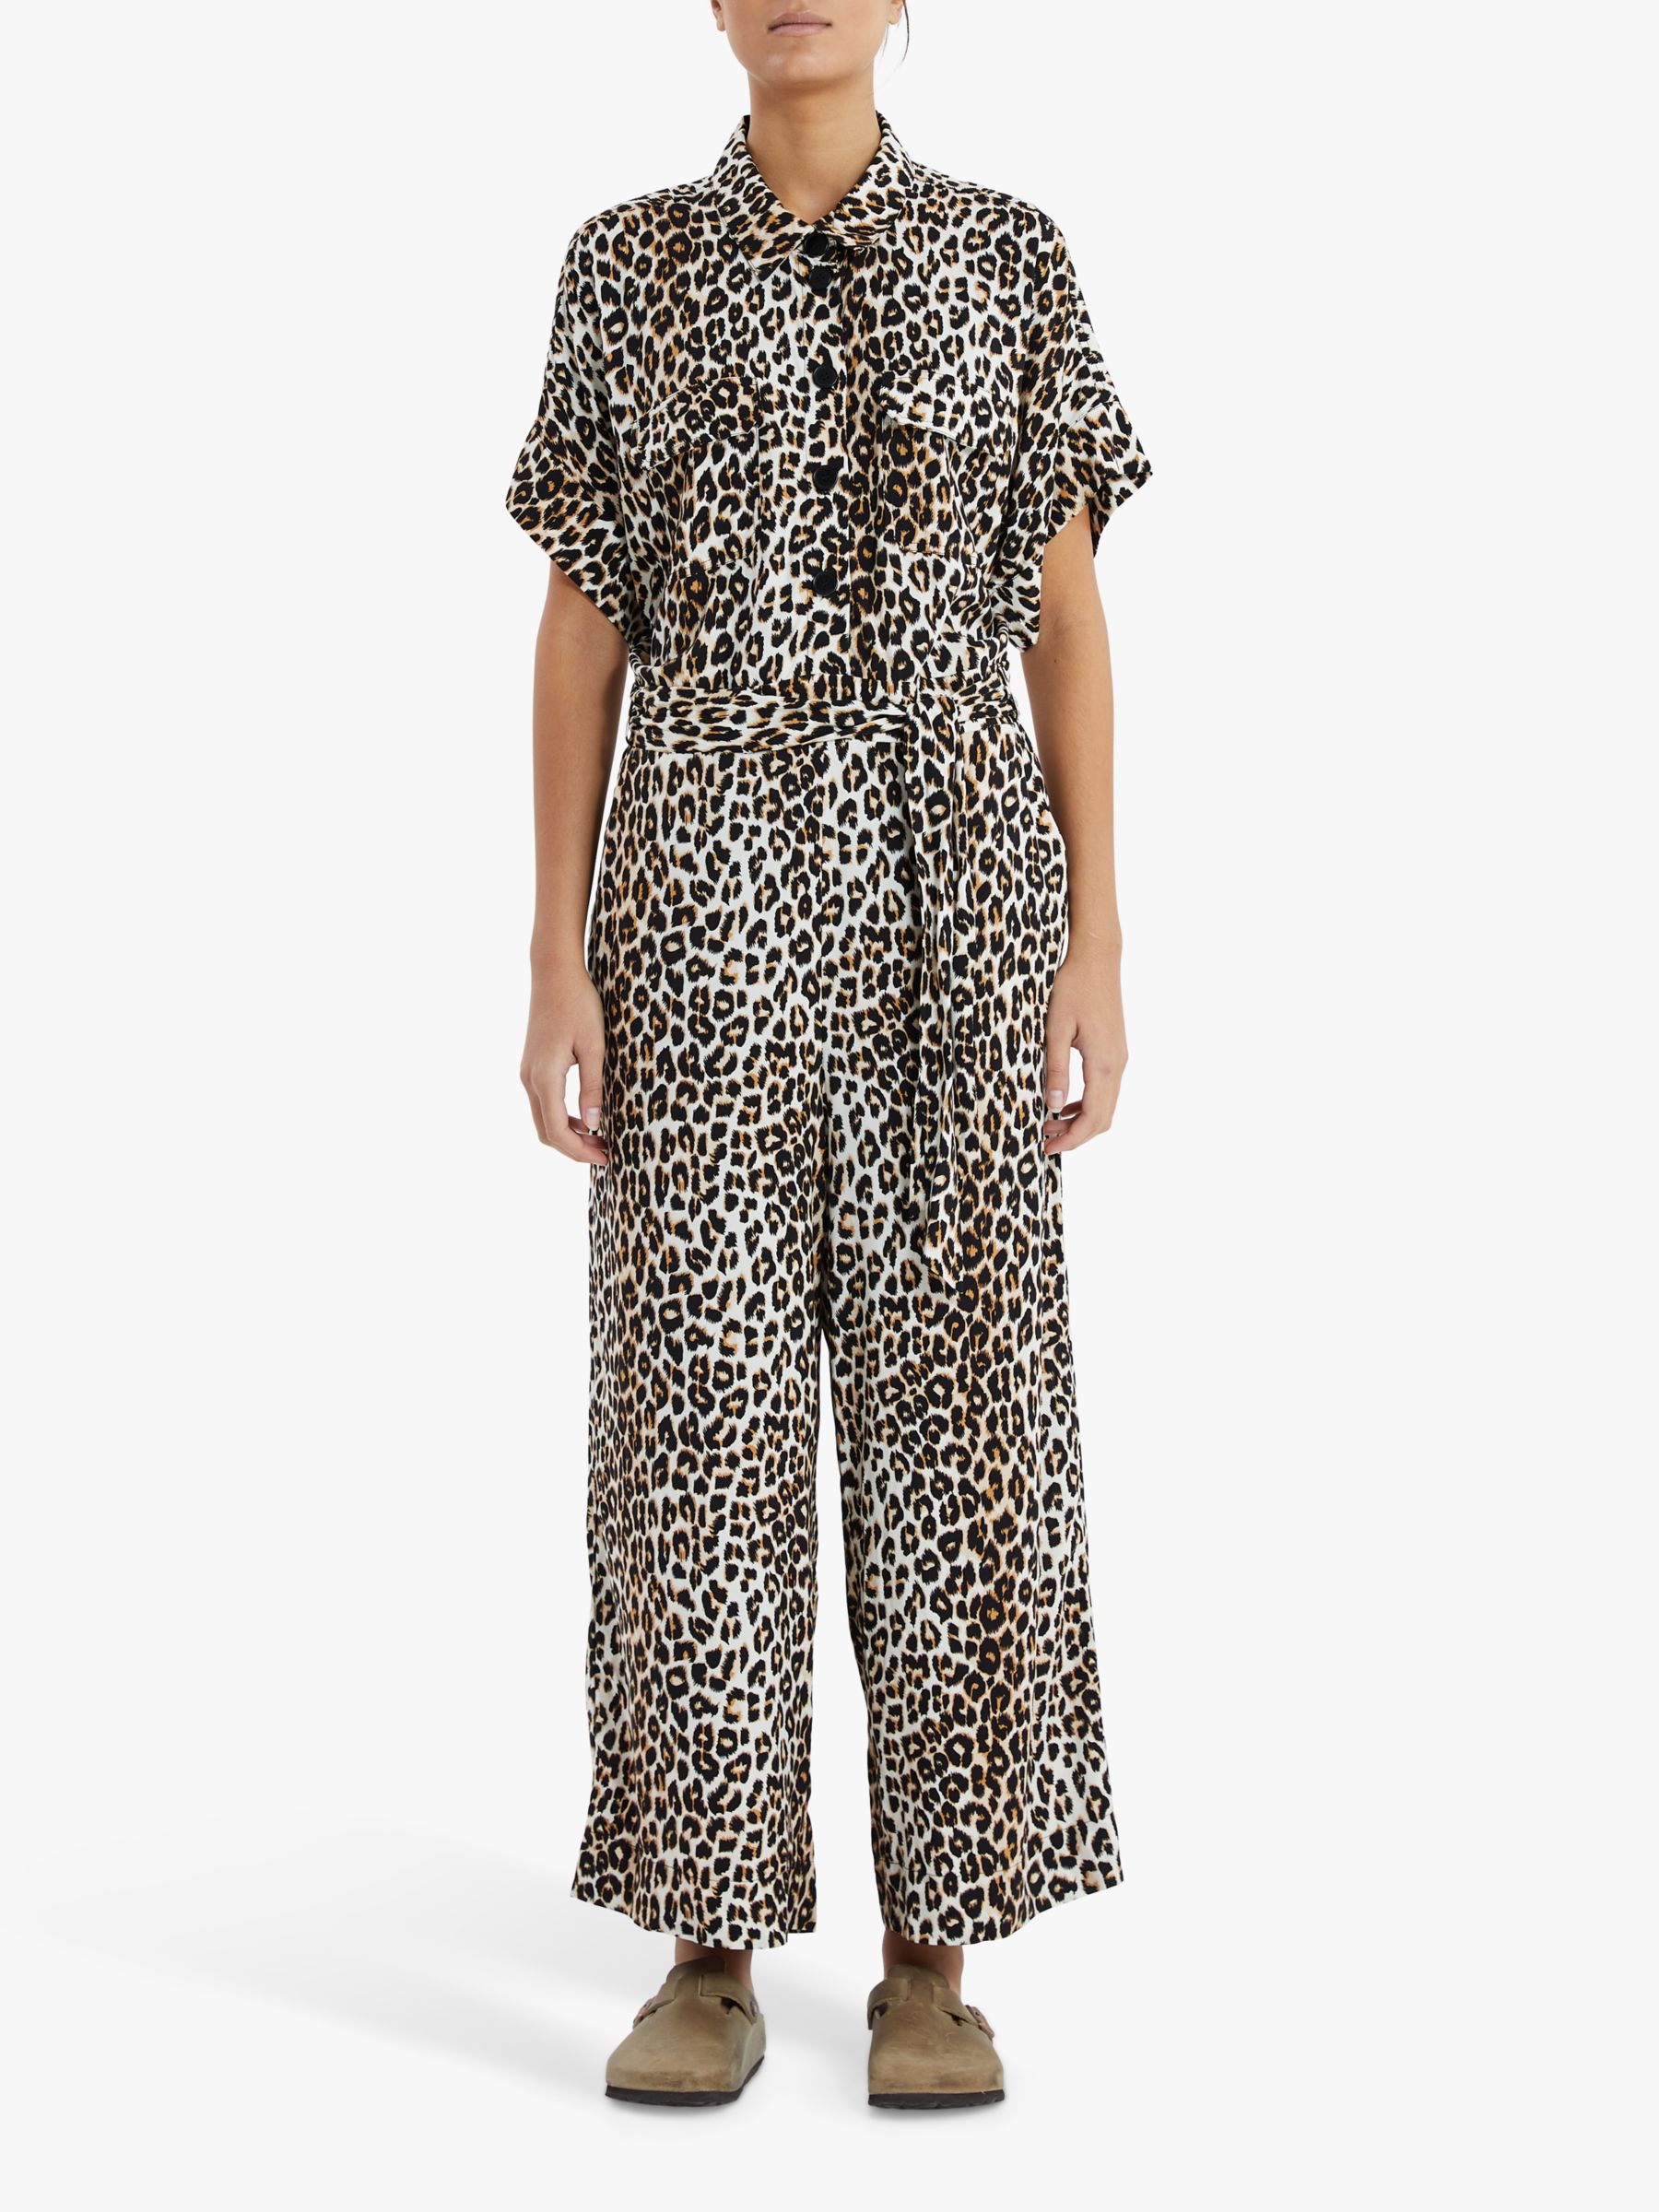 Lollys Laundry Mathilde Leopard Print Jumpsuit, Brown/Multi, XS